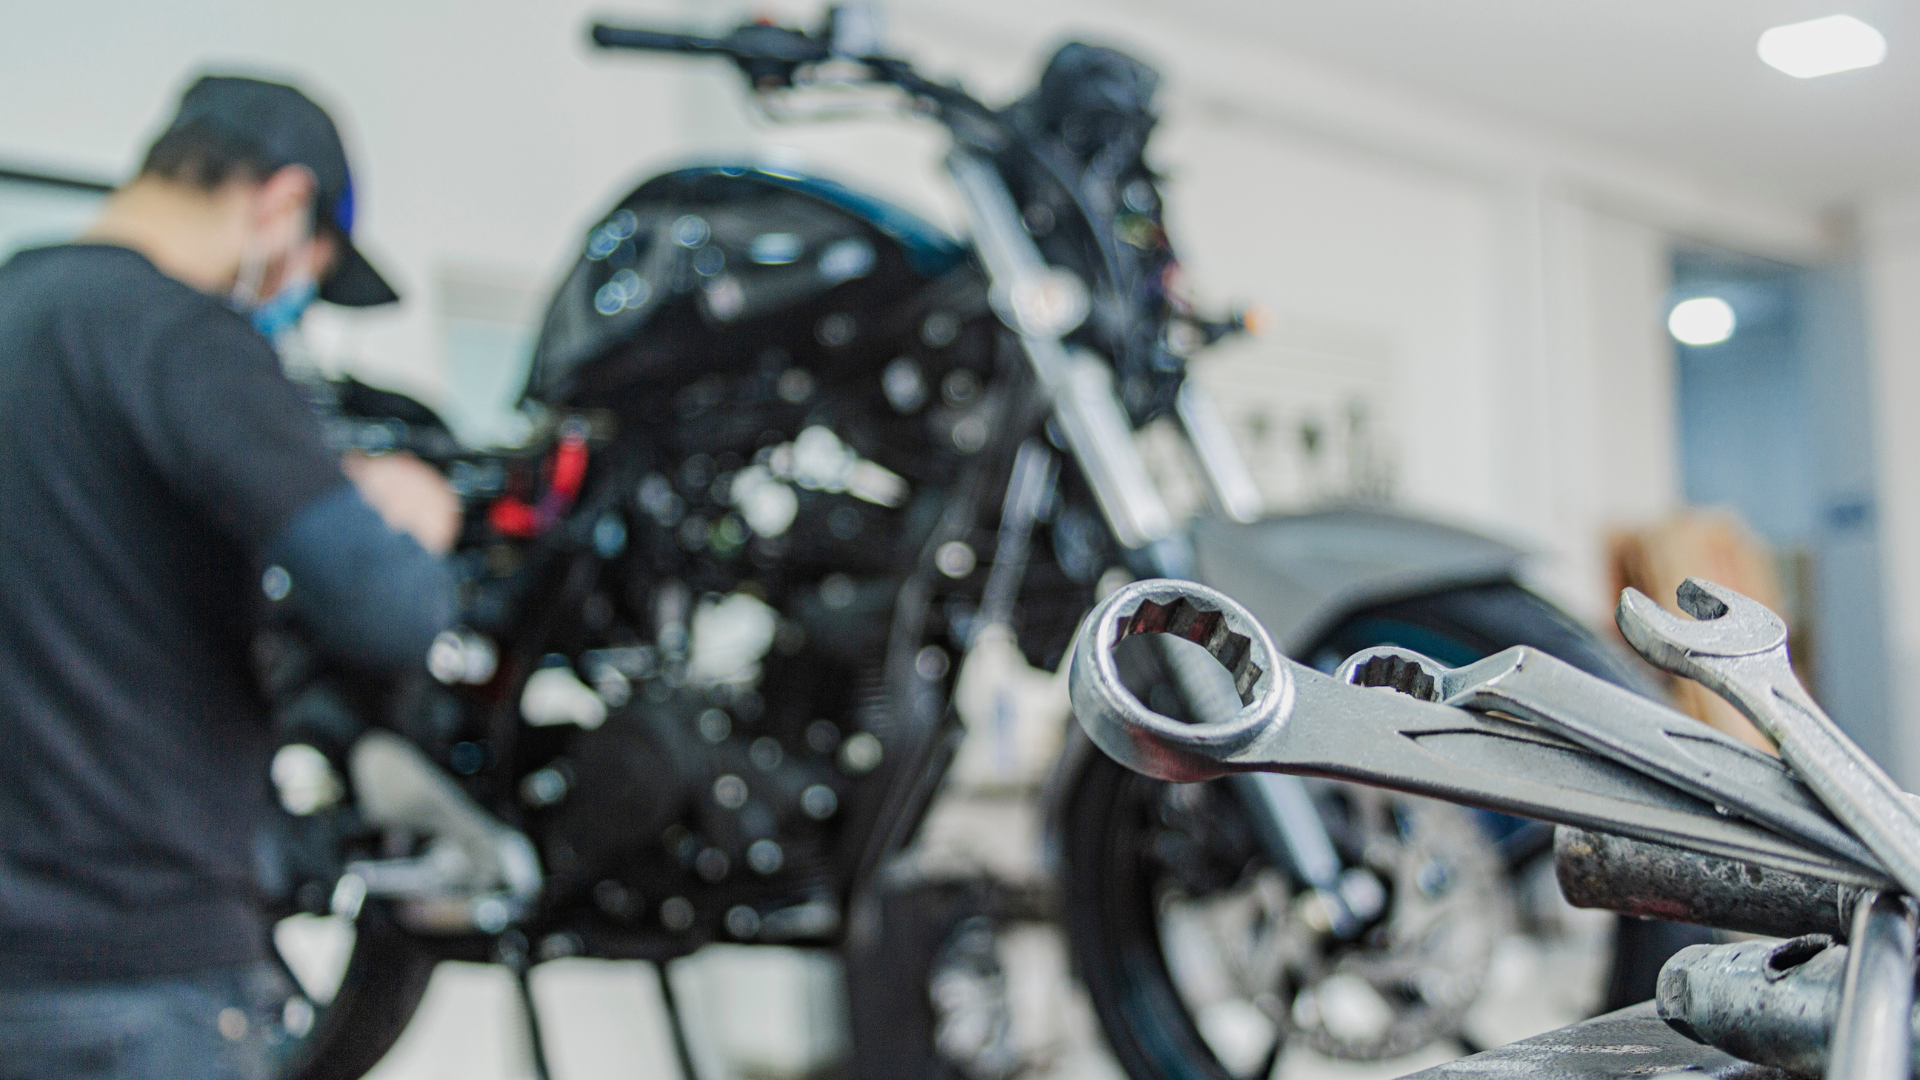 Migliora le tue abilità: iscriviti a un corso di meccanico Harley Davidson - moto - Racext 37